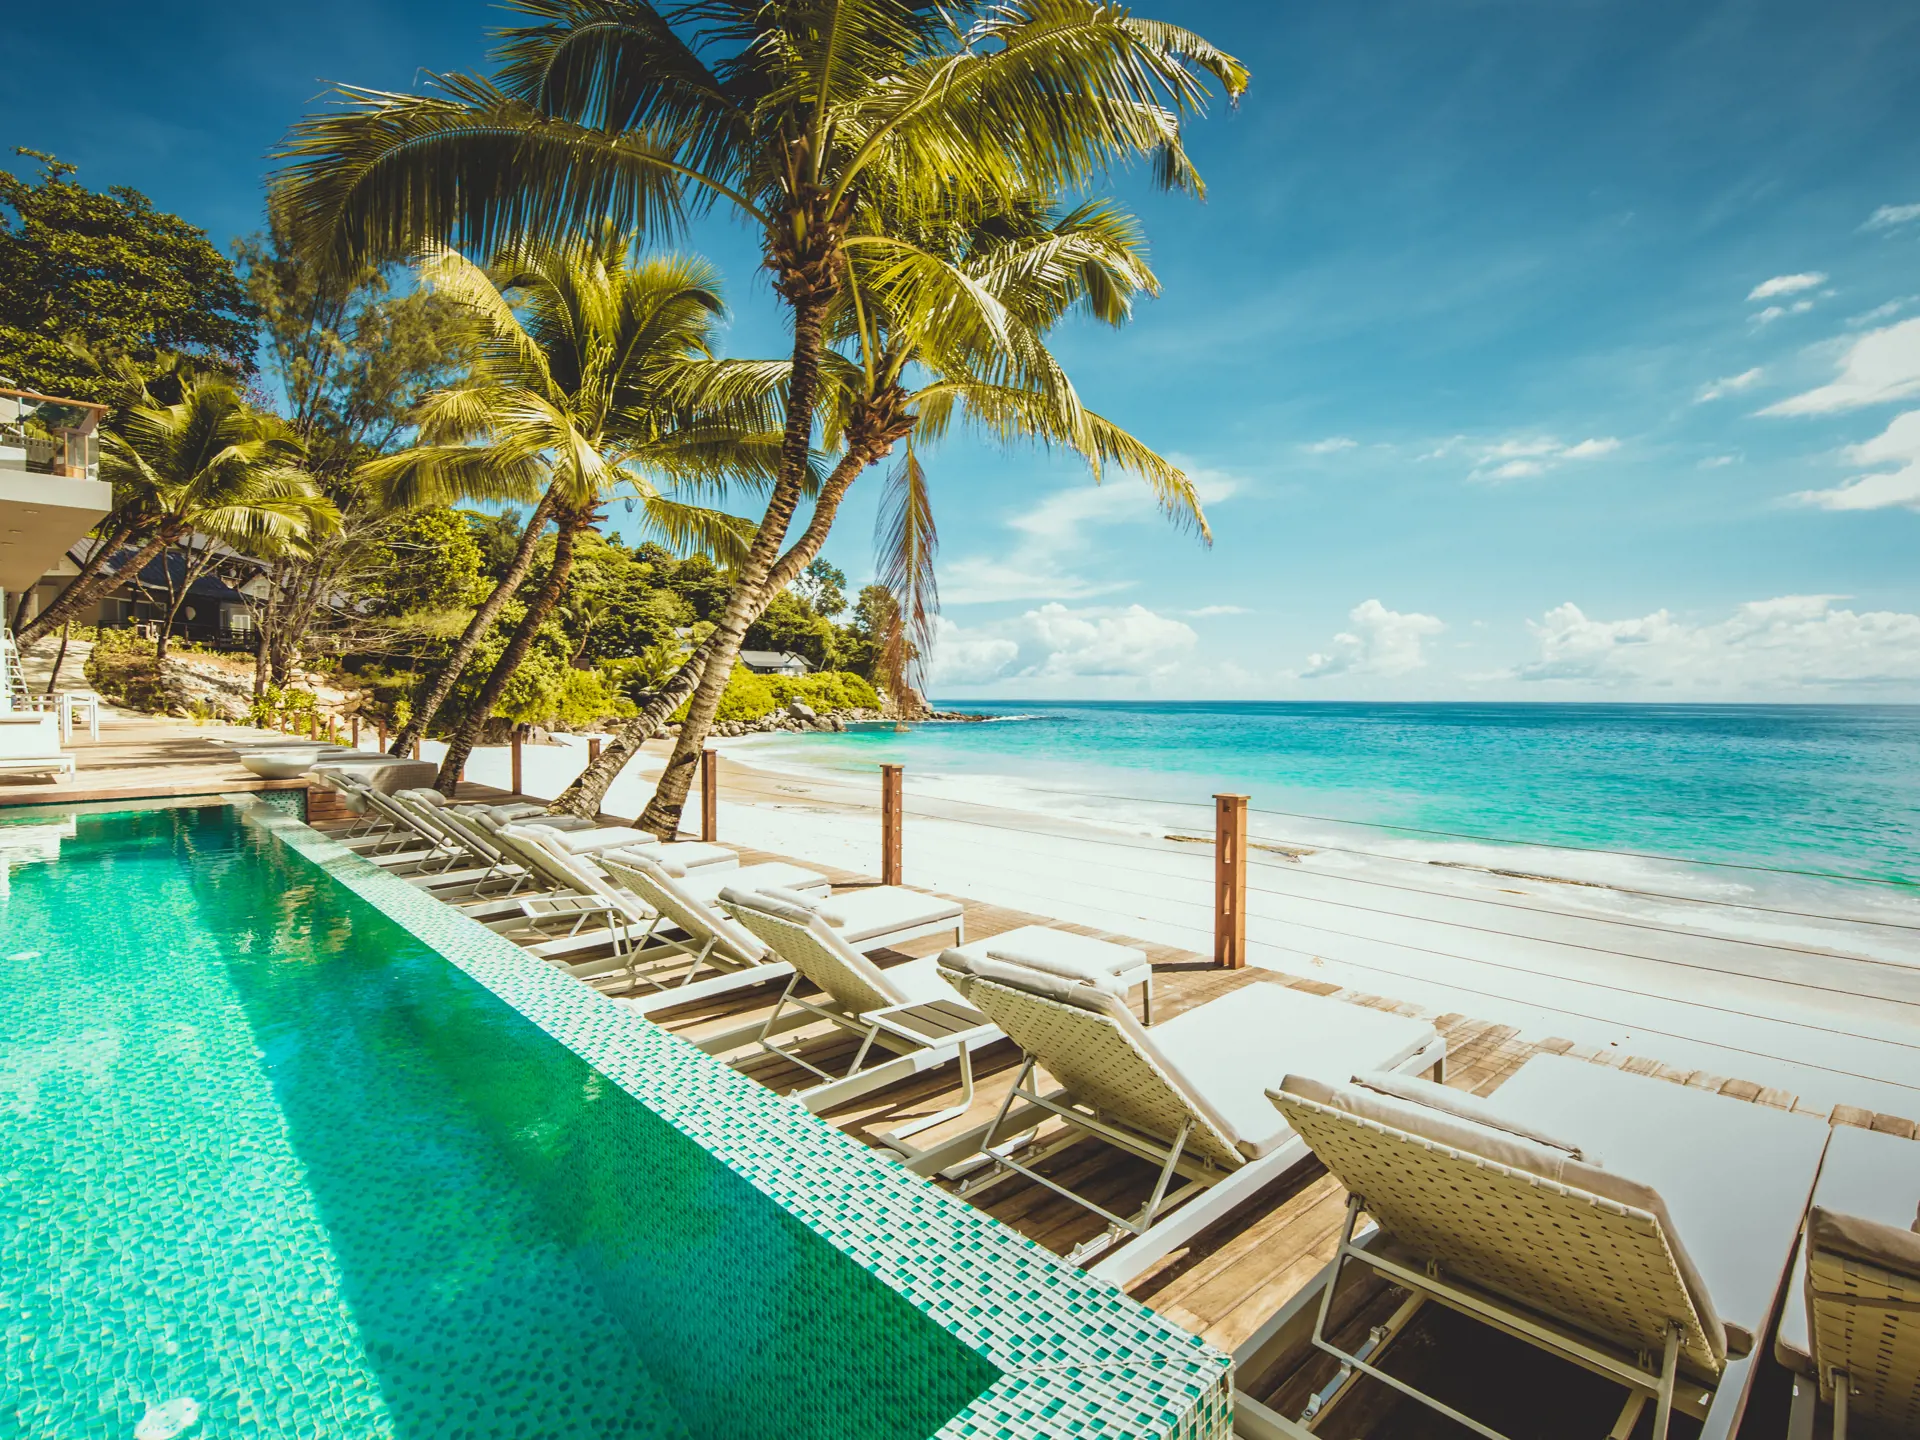 POOL & STRAND - I kan nyde både pool og strand på Carana Beach Hotel. Smid jer på en strandstol og flad ud under solens varme stråler.